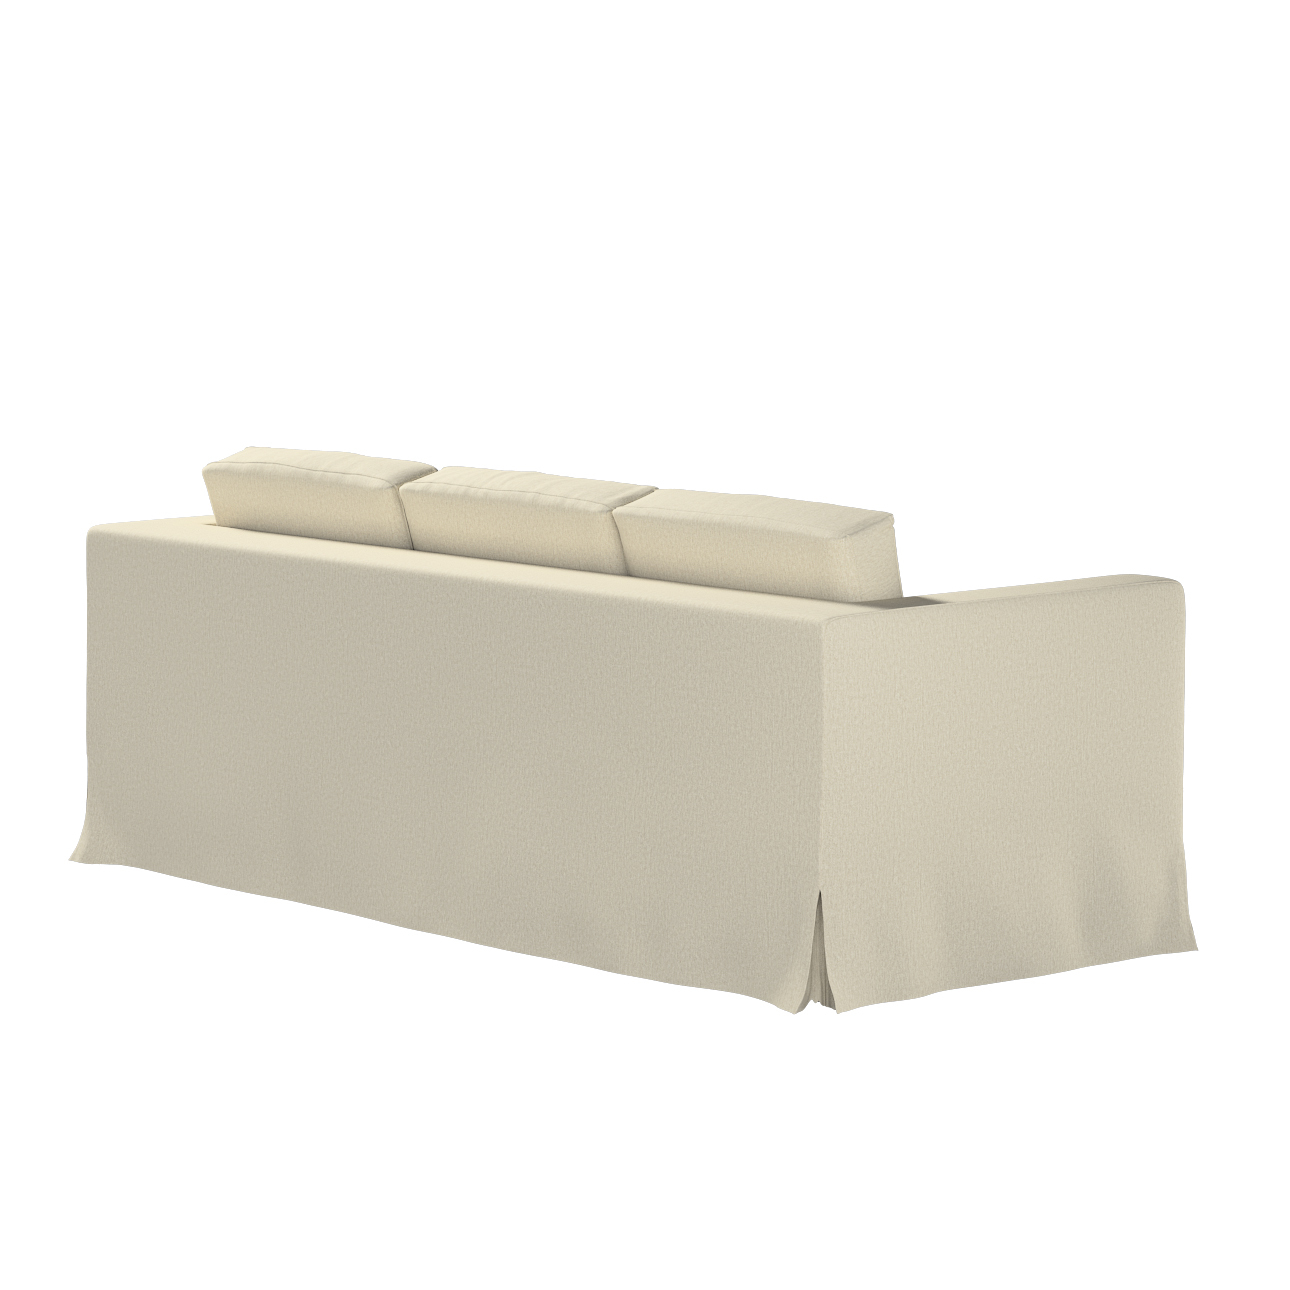 Bezug für Karlanda 3-Sitzer Sofa nicht ausklappbar, lang, beige-grau, Bezug günstig online kaufen